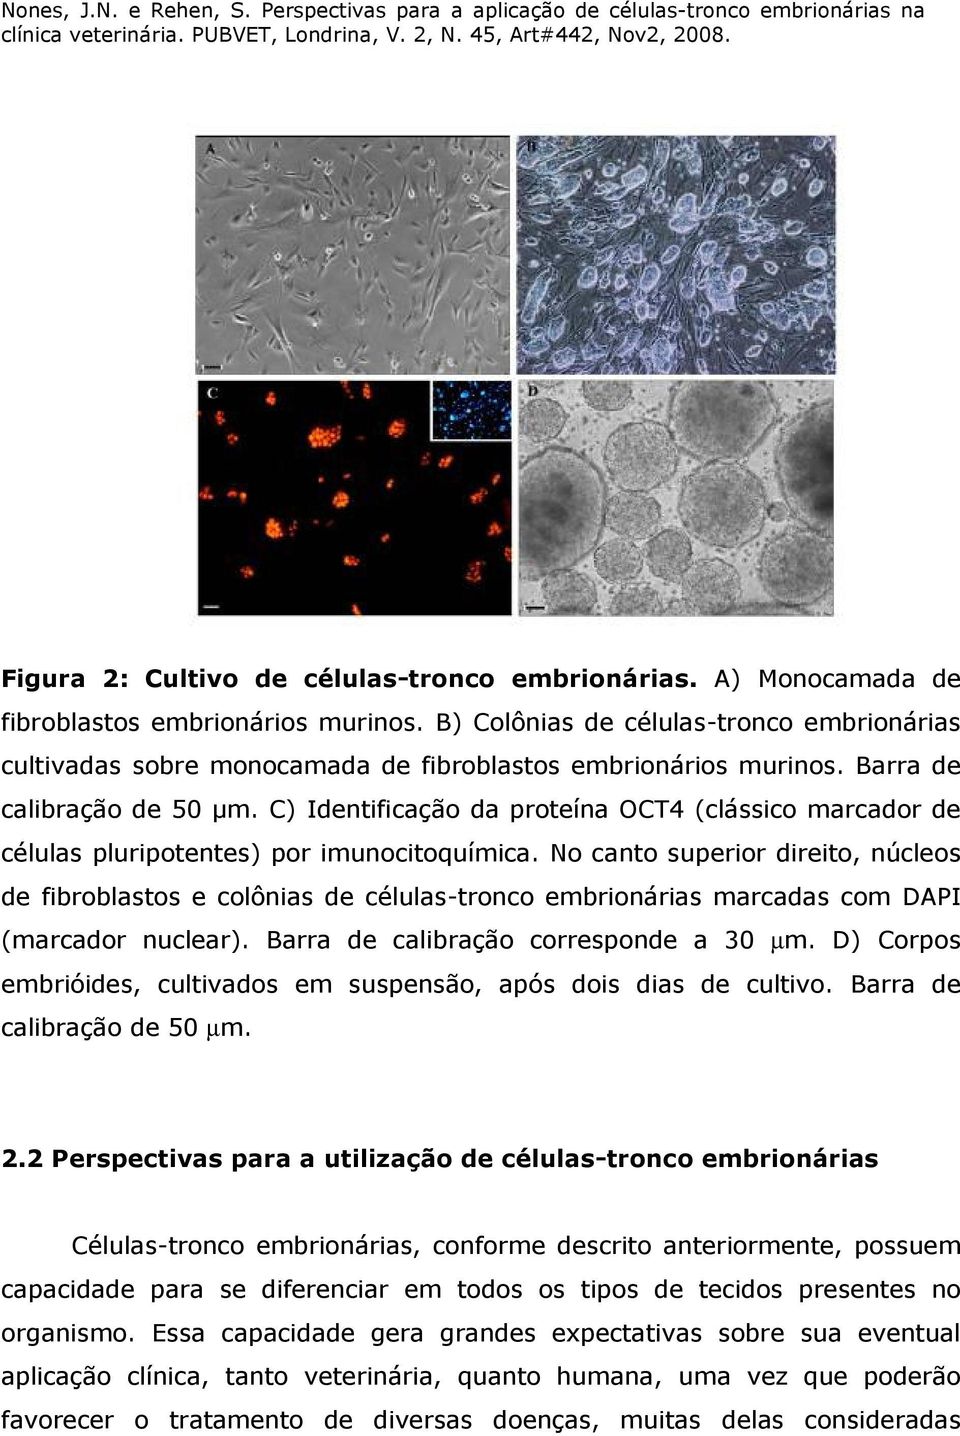 C) Identificação da proteína OCT4 (clássico marcador de células pluripotentes) por imunocitoquímica.